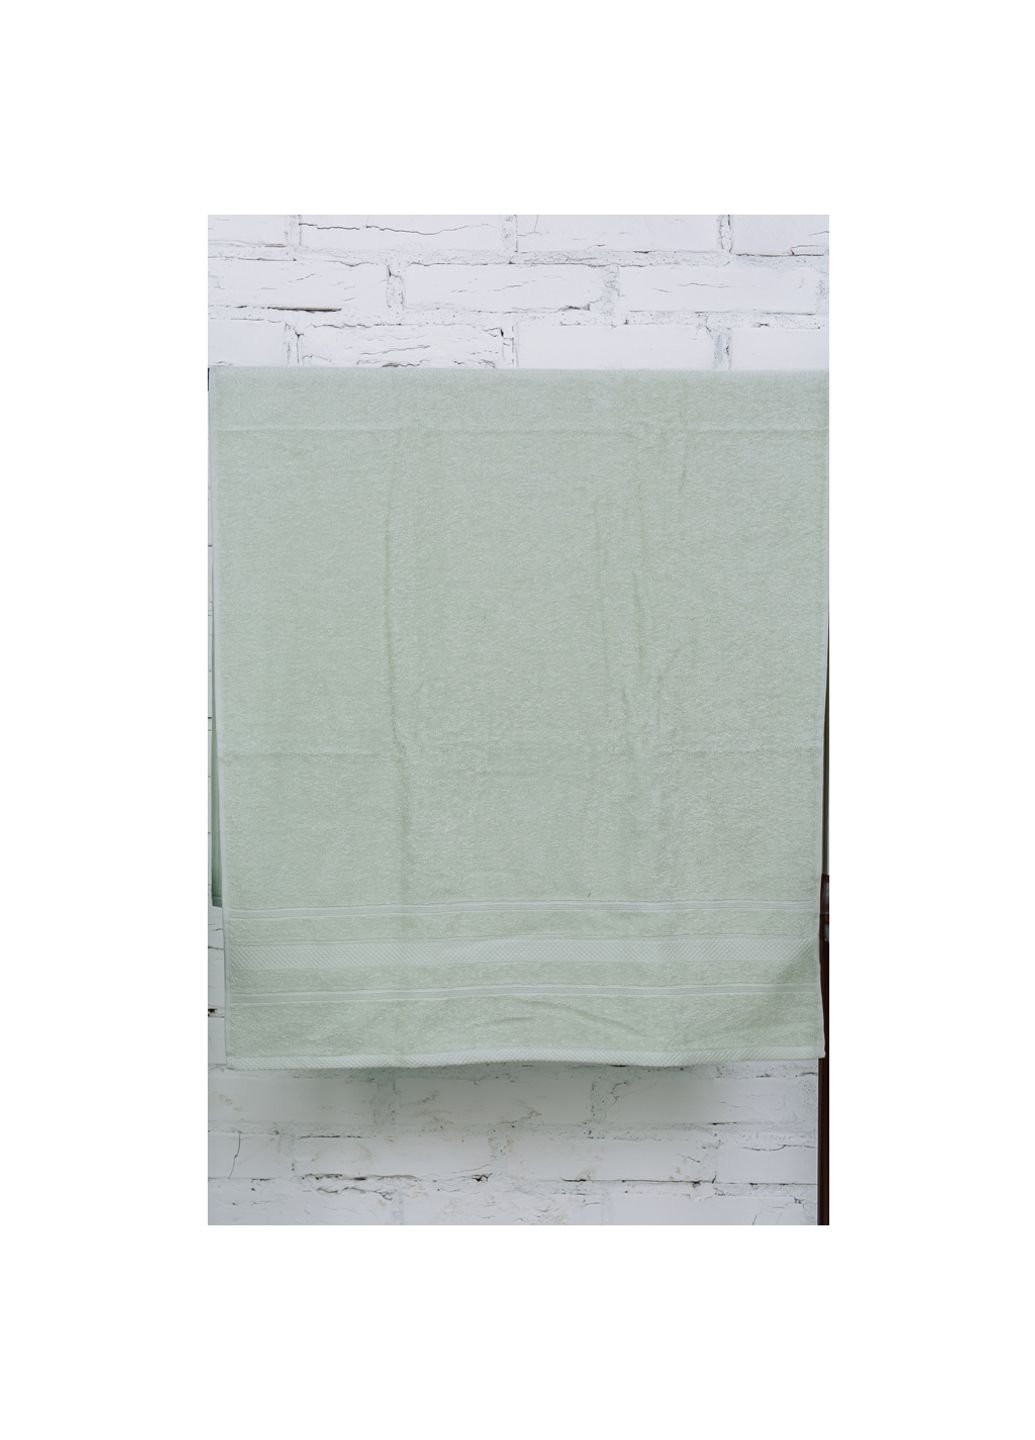 Mirson полотенце набор банный №5008 softness menthol 50x90, 70x140 (2200003183009) мятный производство - Украина